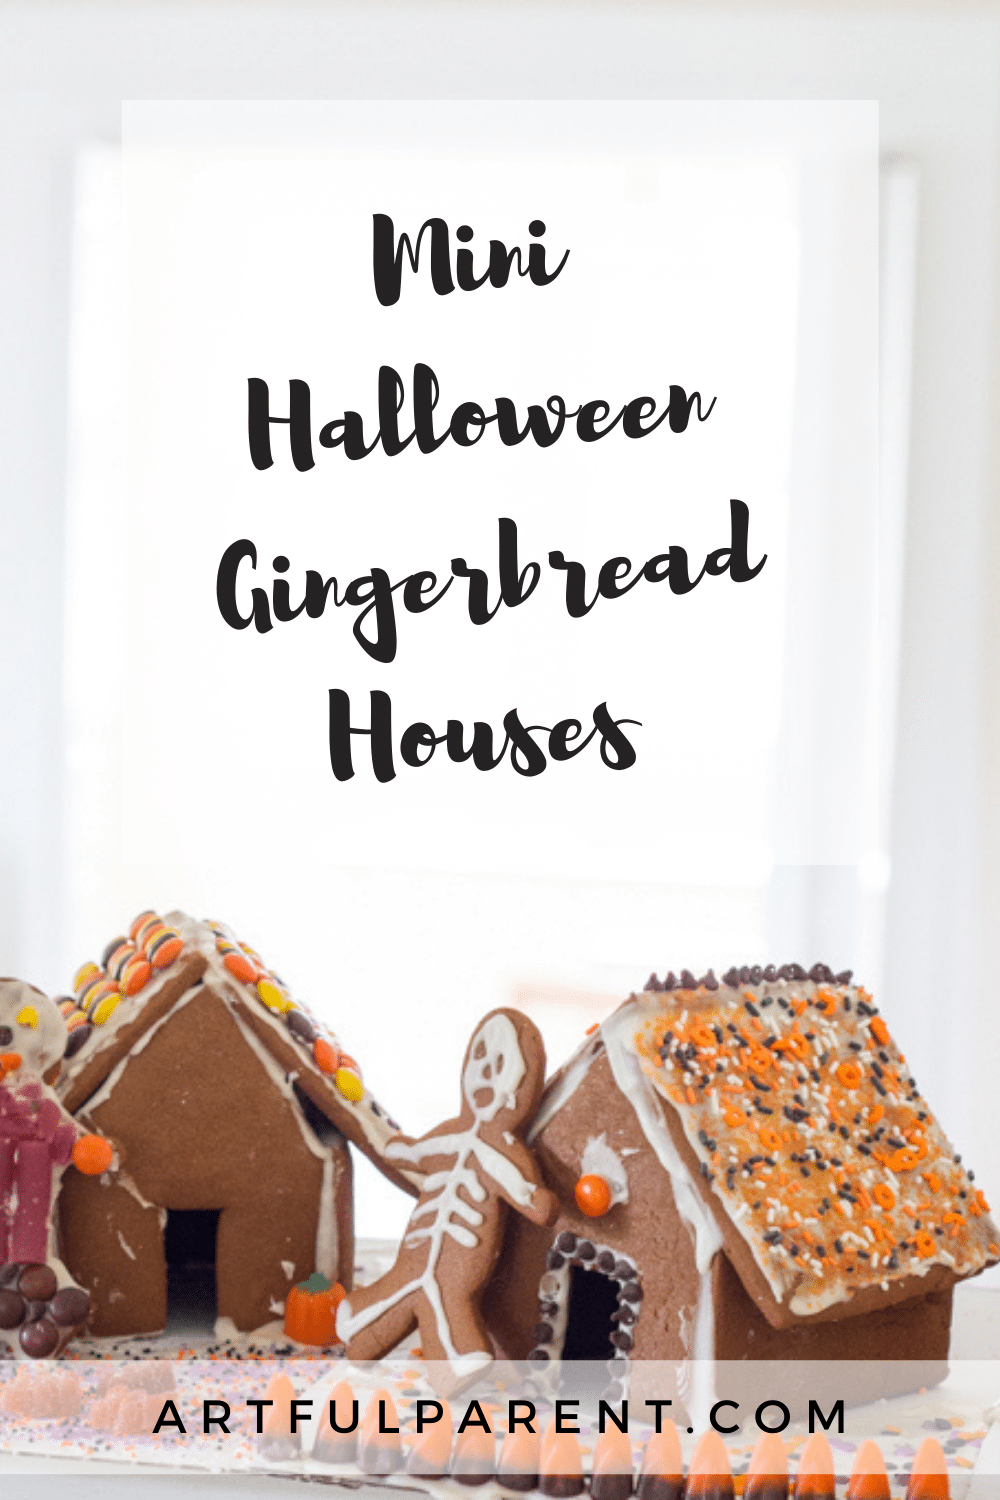 How to Make Mini Halloween Gingerbread Houses